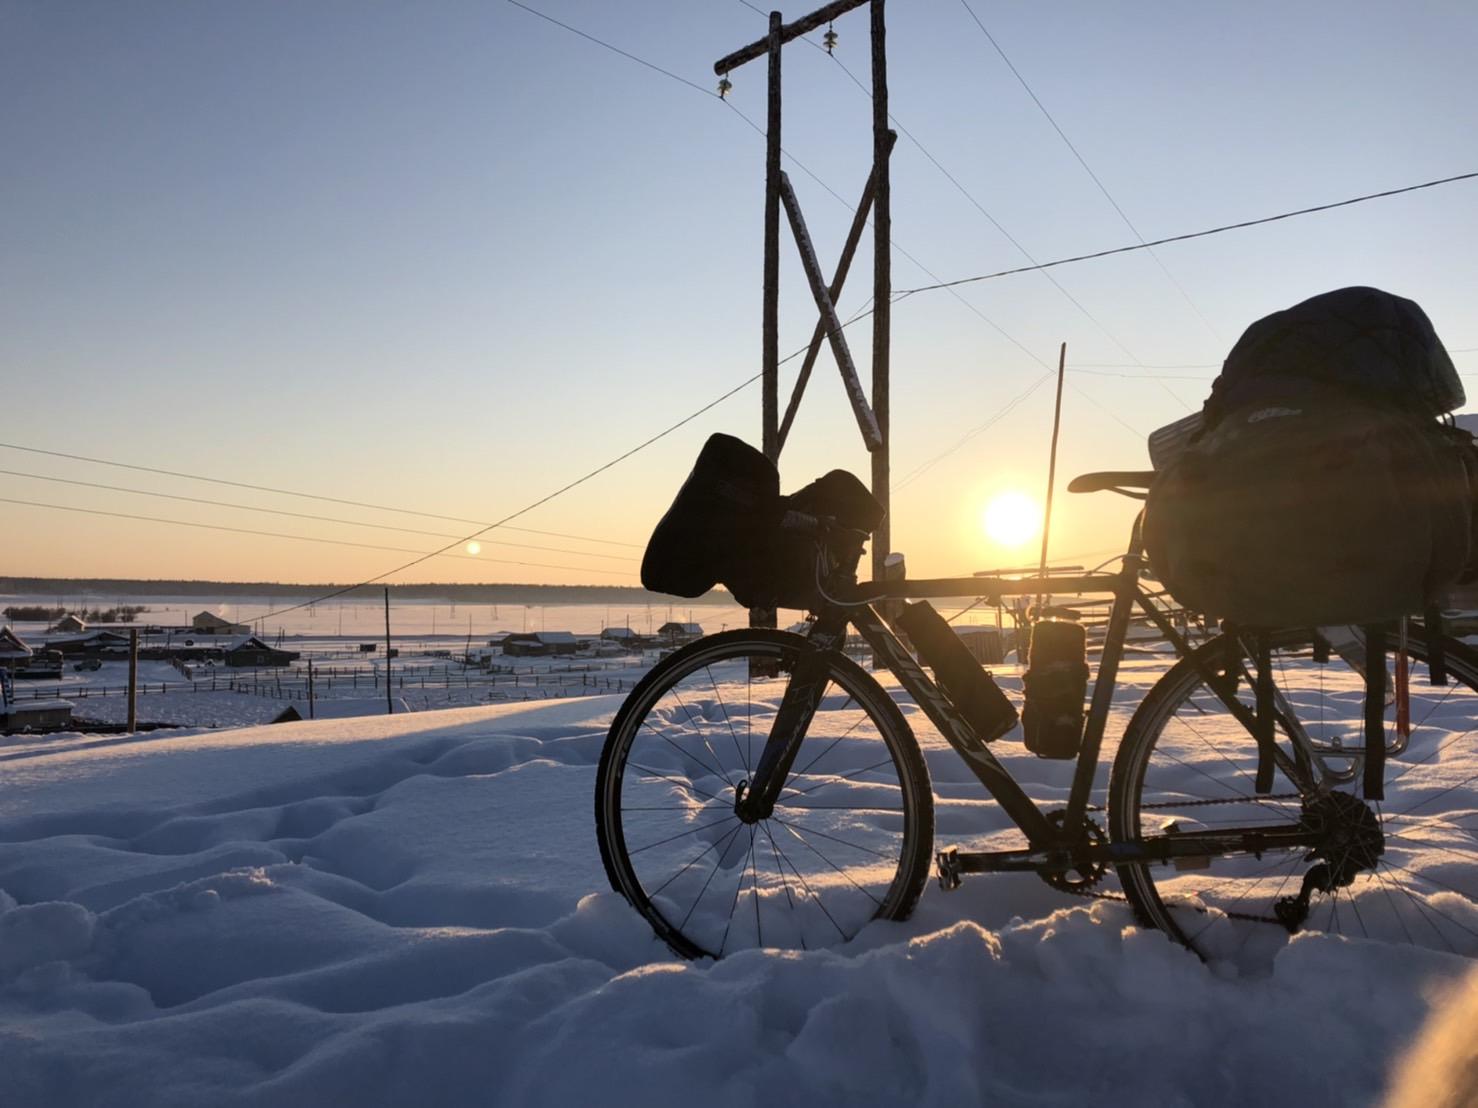 雪の上に置かれた自転車

自動的に生成された説明